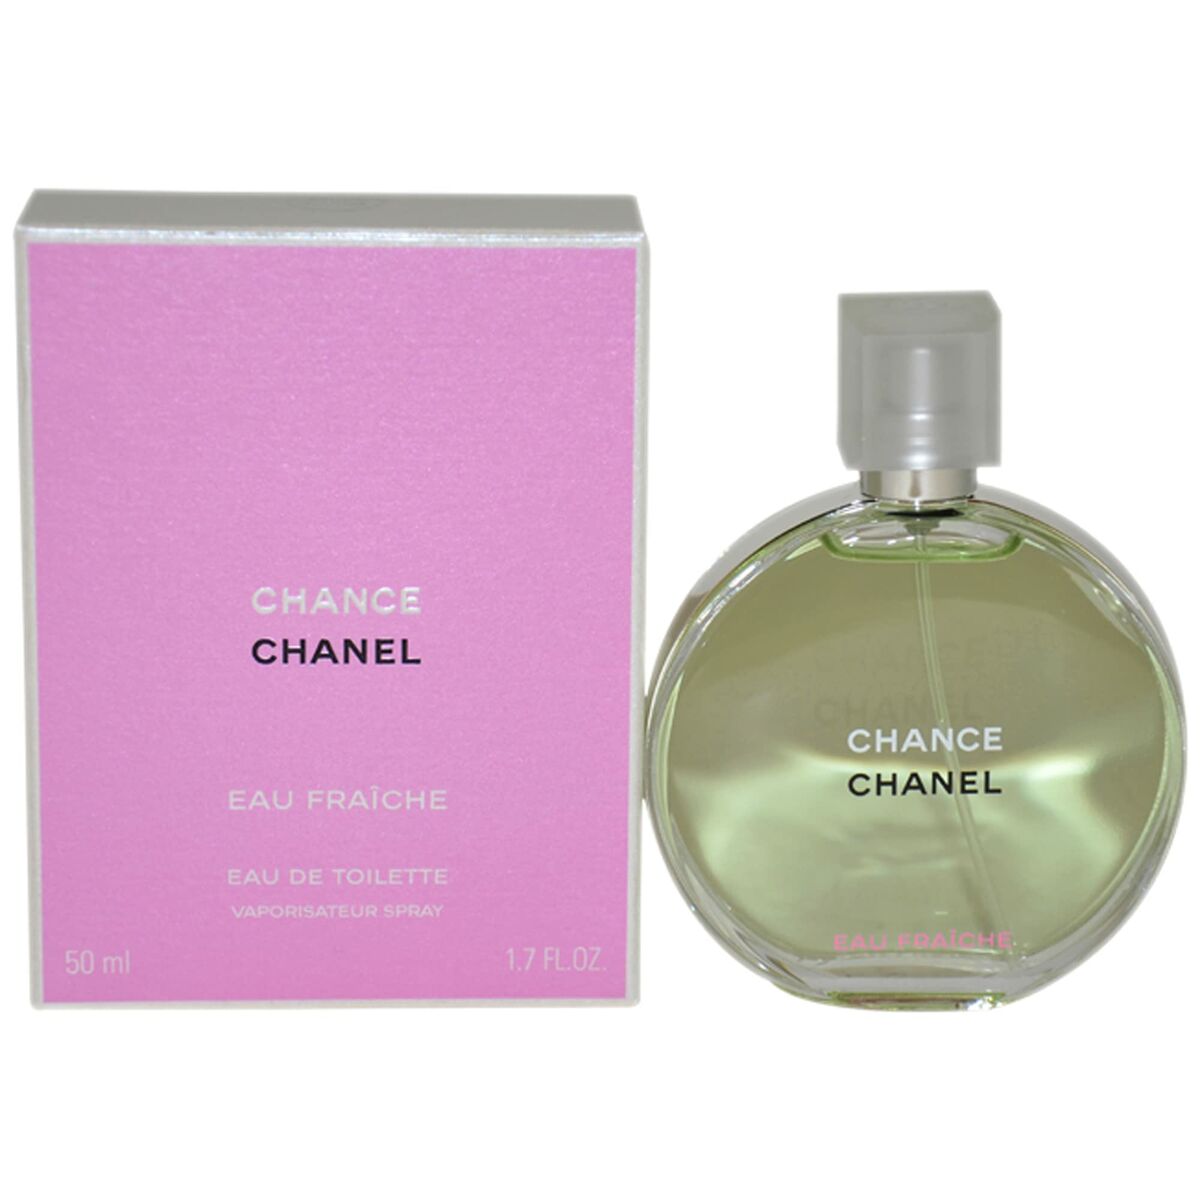 Women's Perfume Chanel EDT Chance Eau Fraiche 50 ml-0